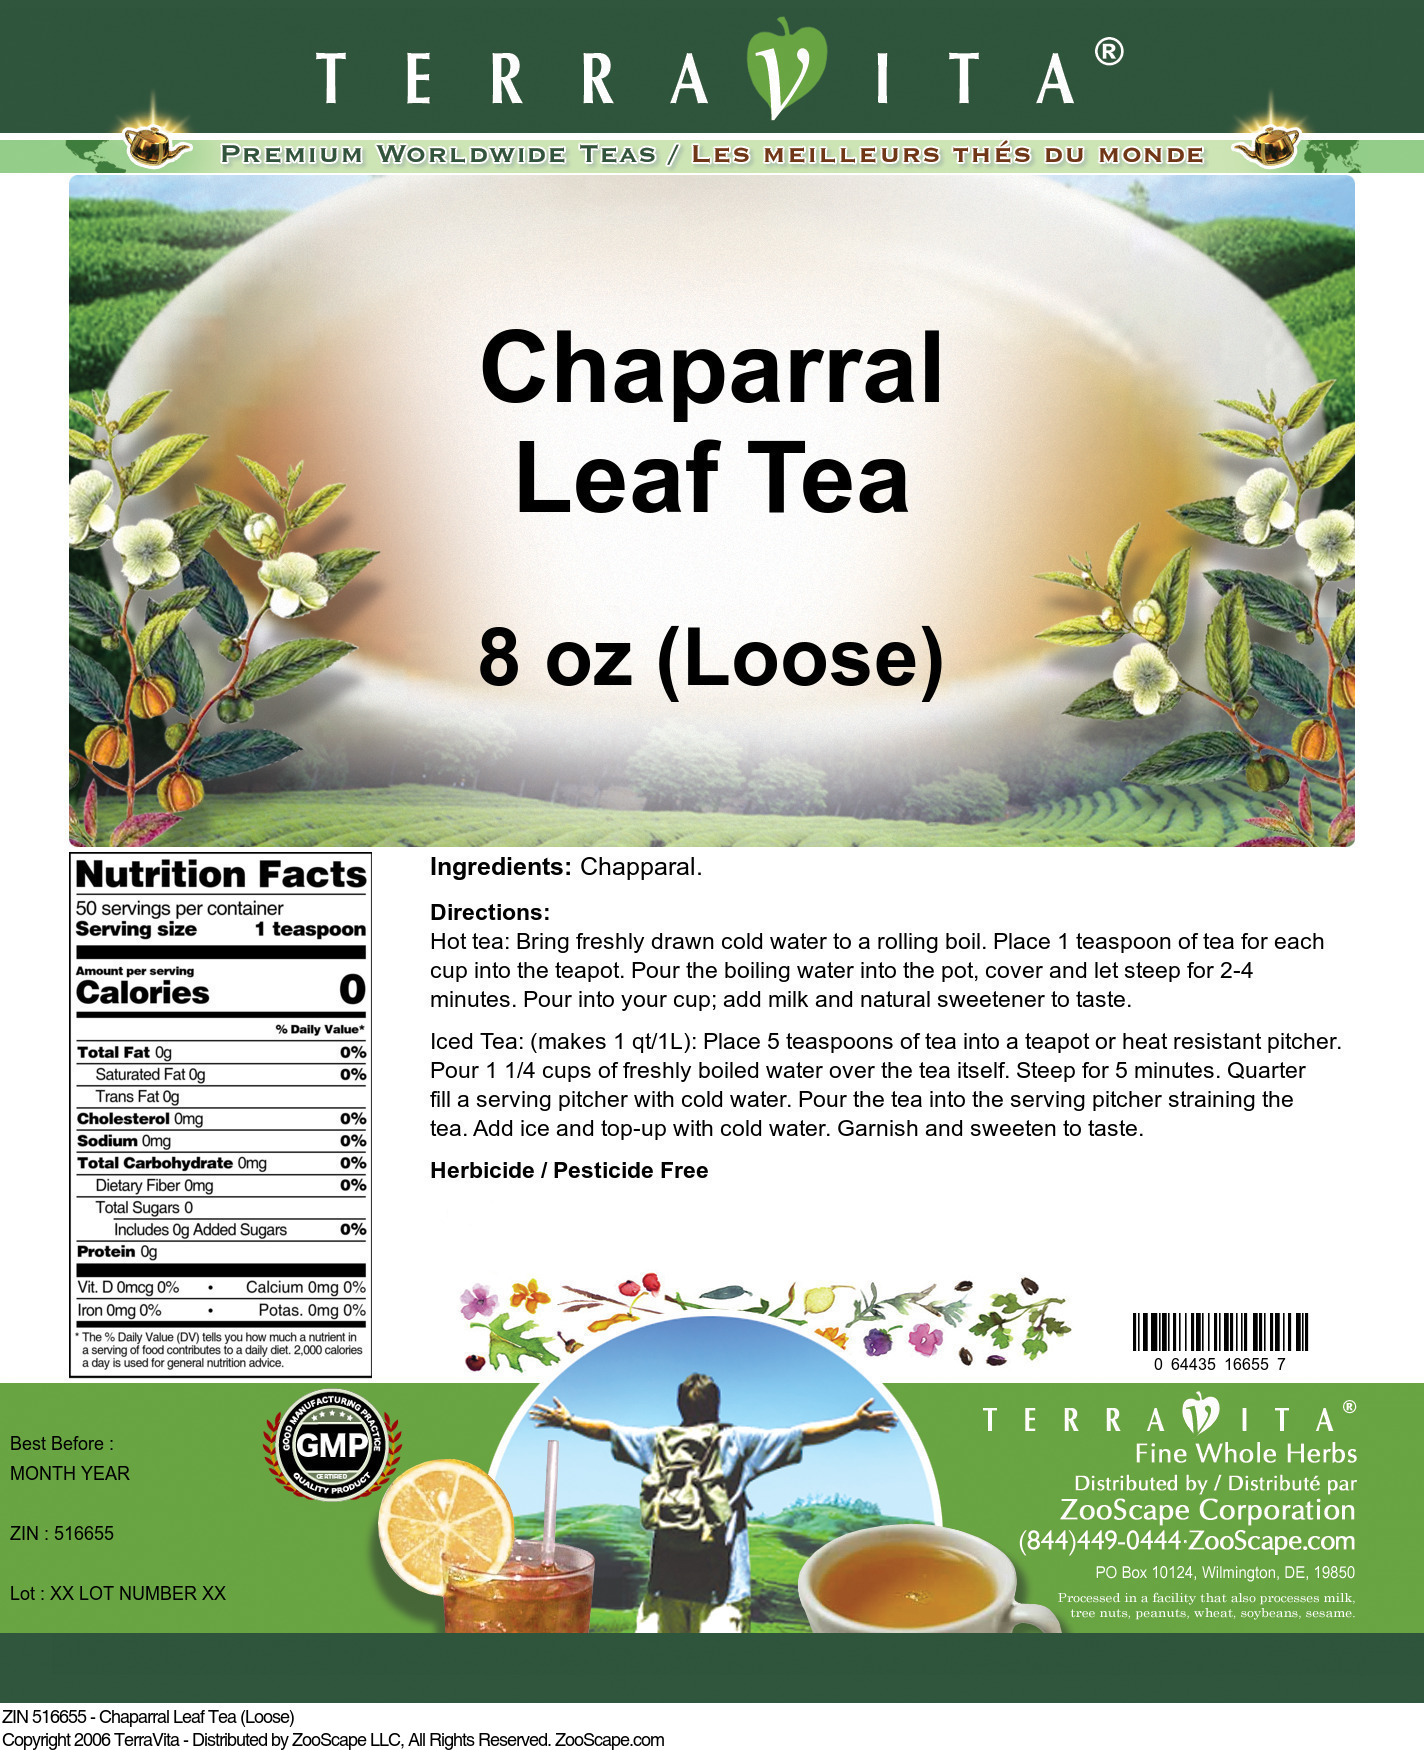 Chaparral Leaf Tea (Loose) - Label